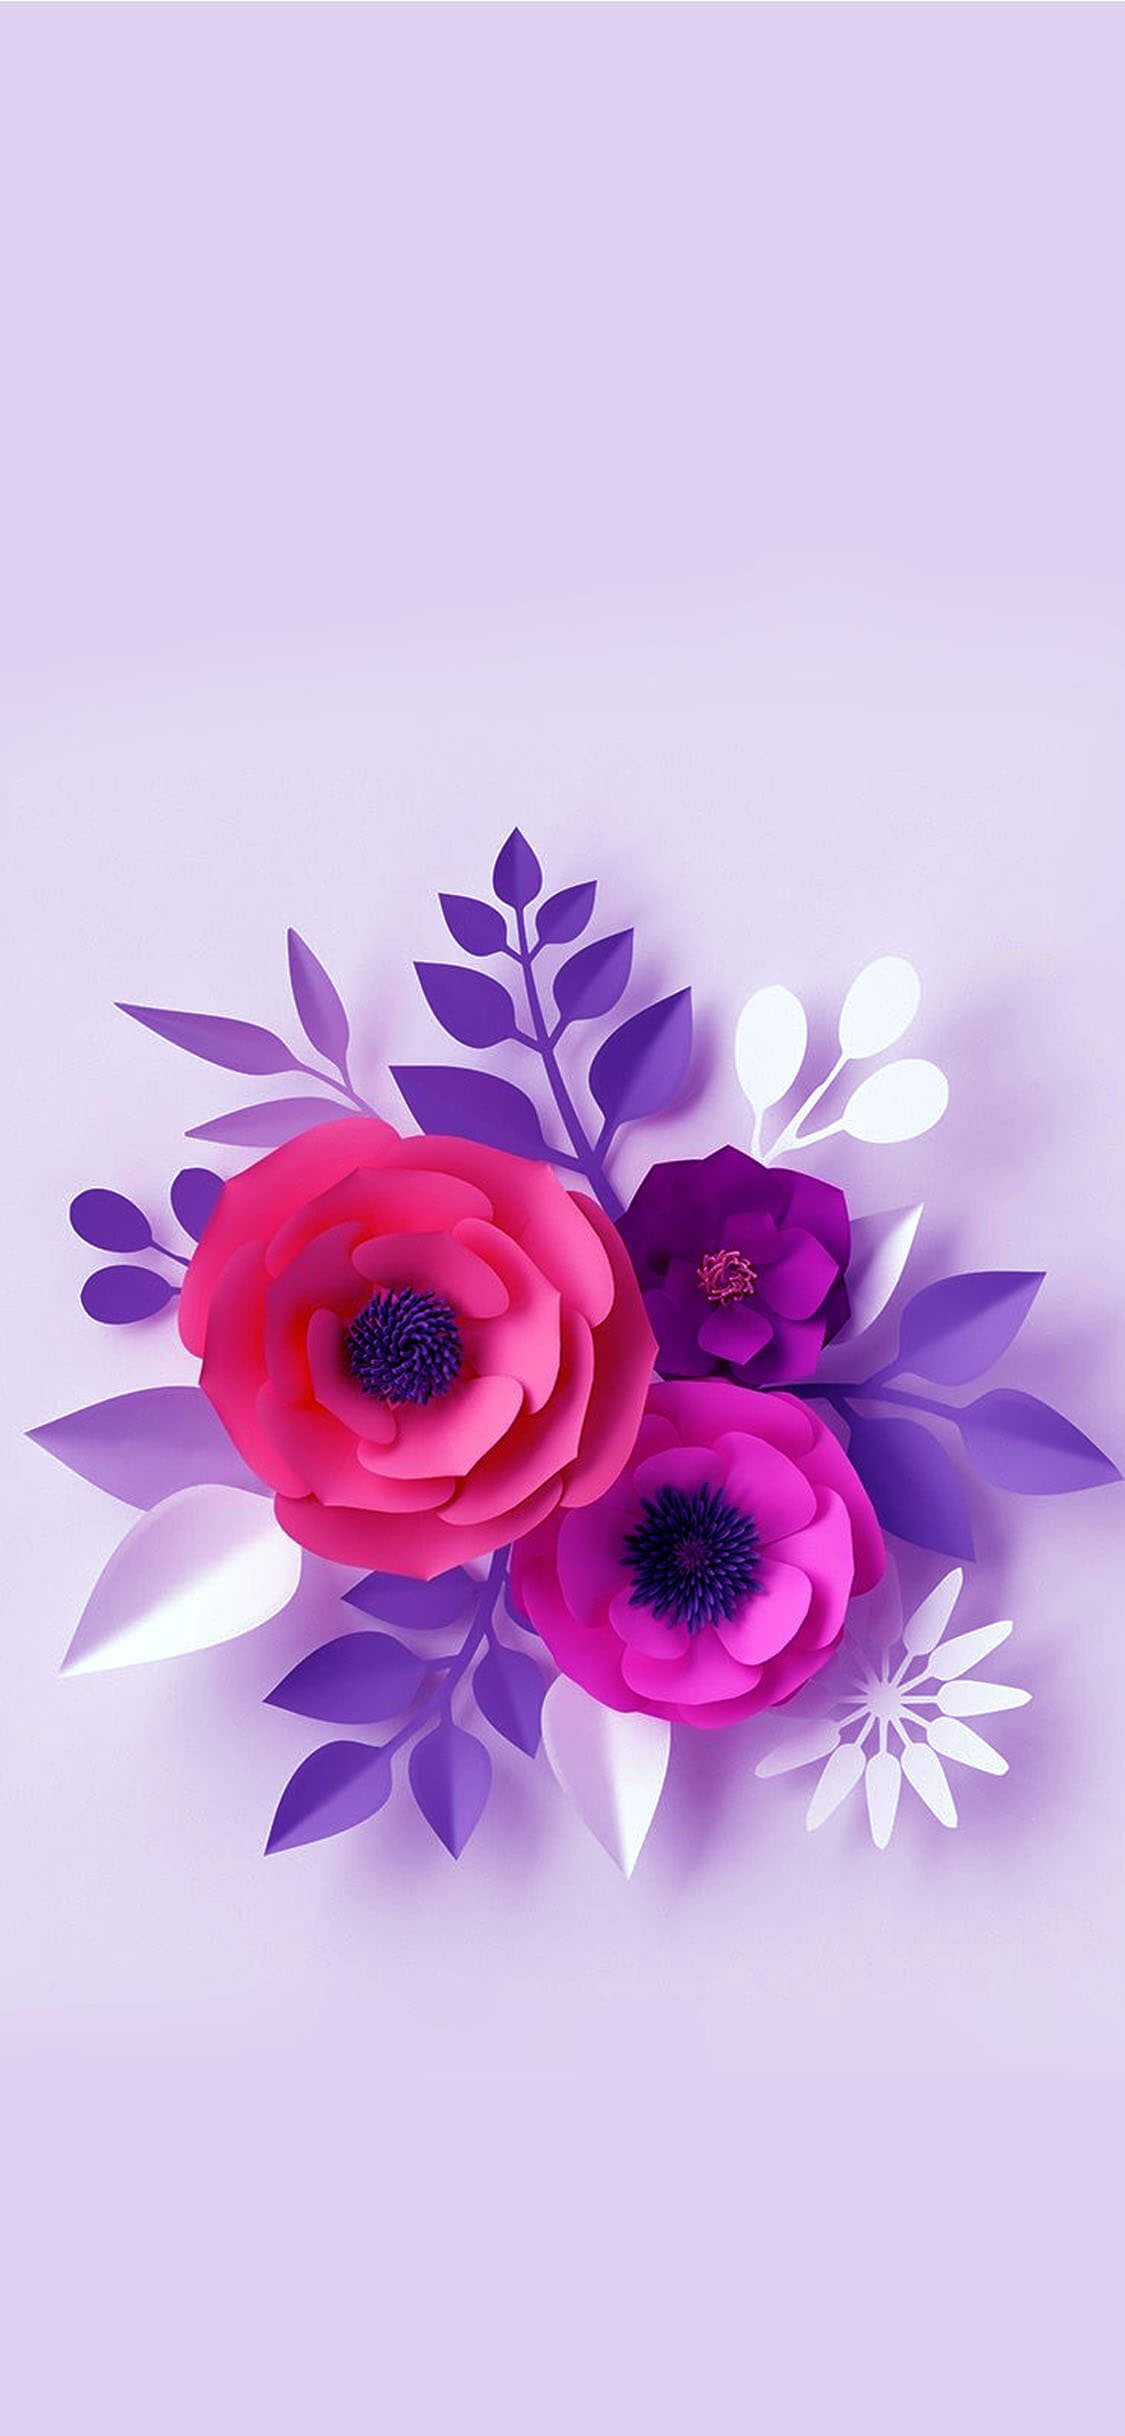 Nền tảng Iphone đa dạng với hình ảnh hoa tím trên nền tím tinh tế. Hãy chiêm ngưỡng vẻ đẹp tuyệt vời của đóa hoa này trên màn hình Iphone của bạn.